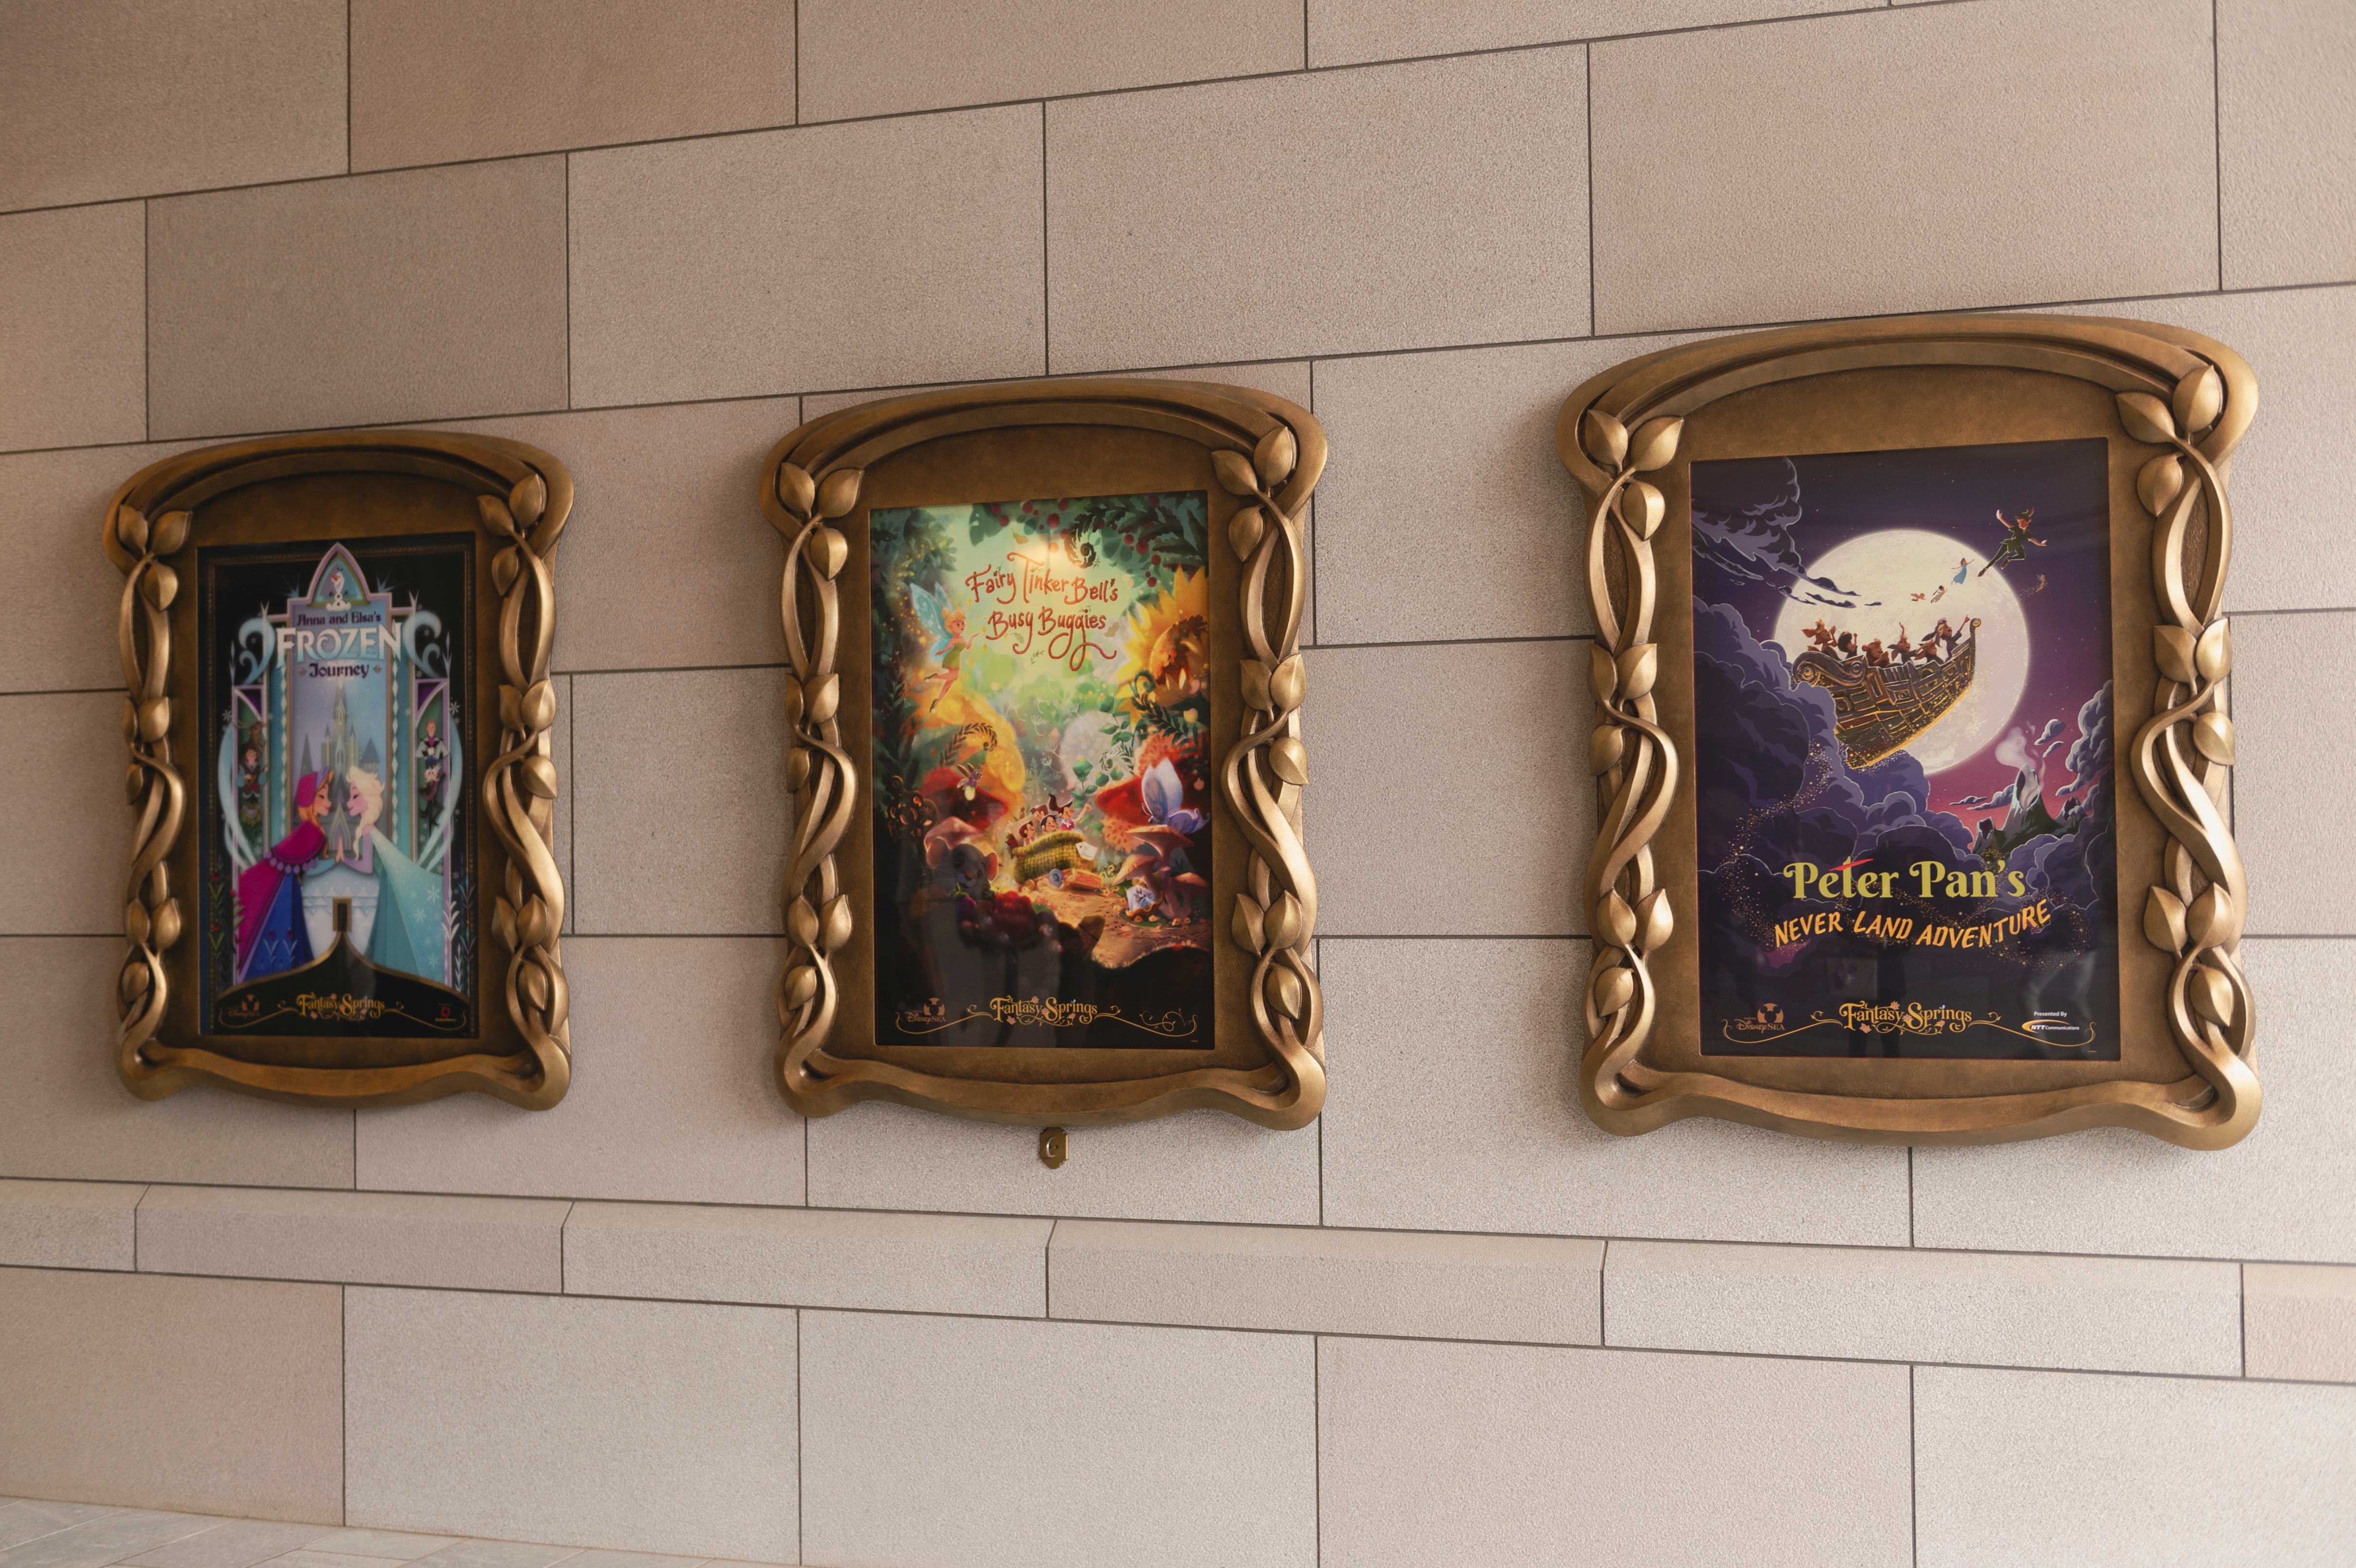 ファンタジースプリングスのエントランスには作品のポスターが並ぶ。